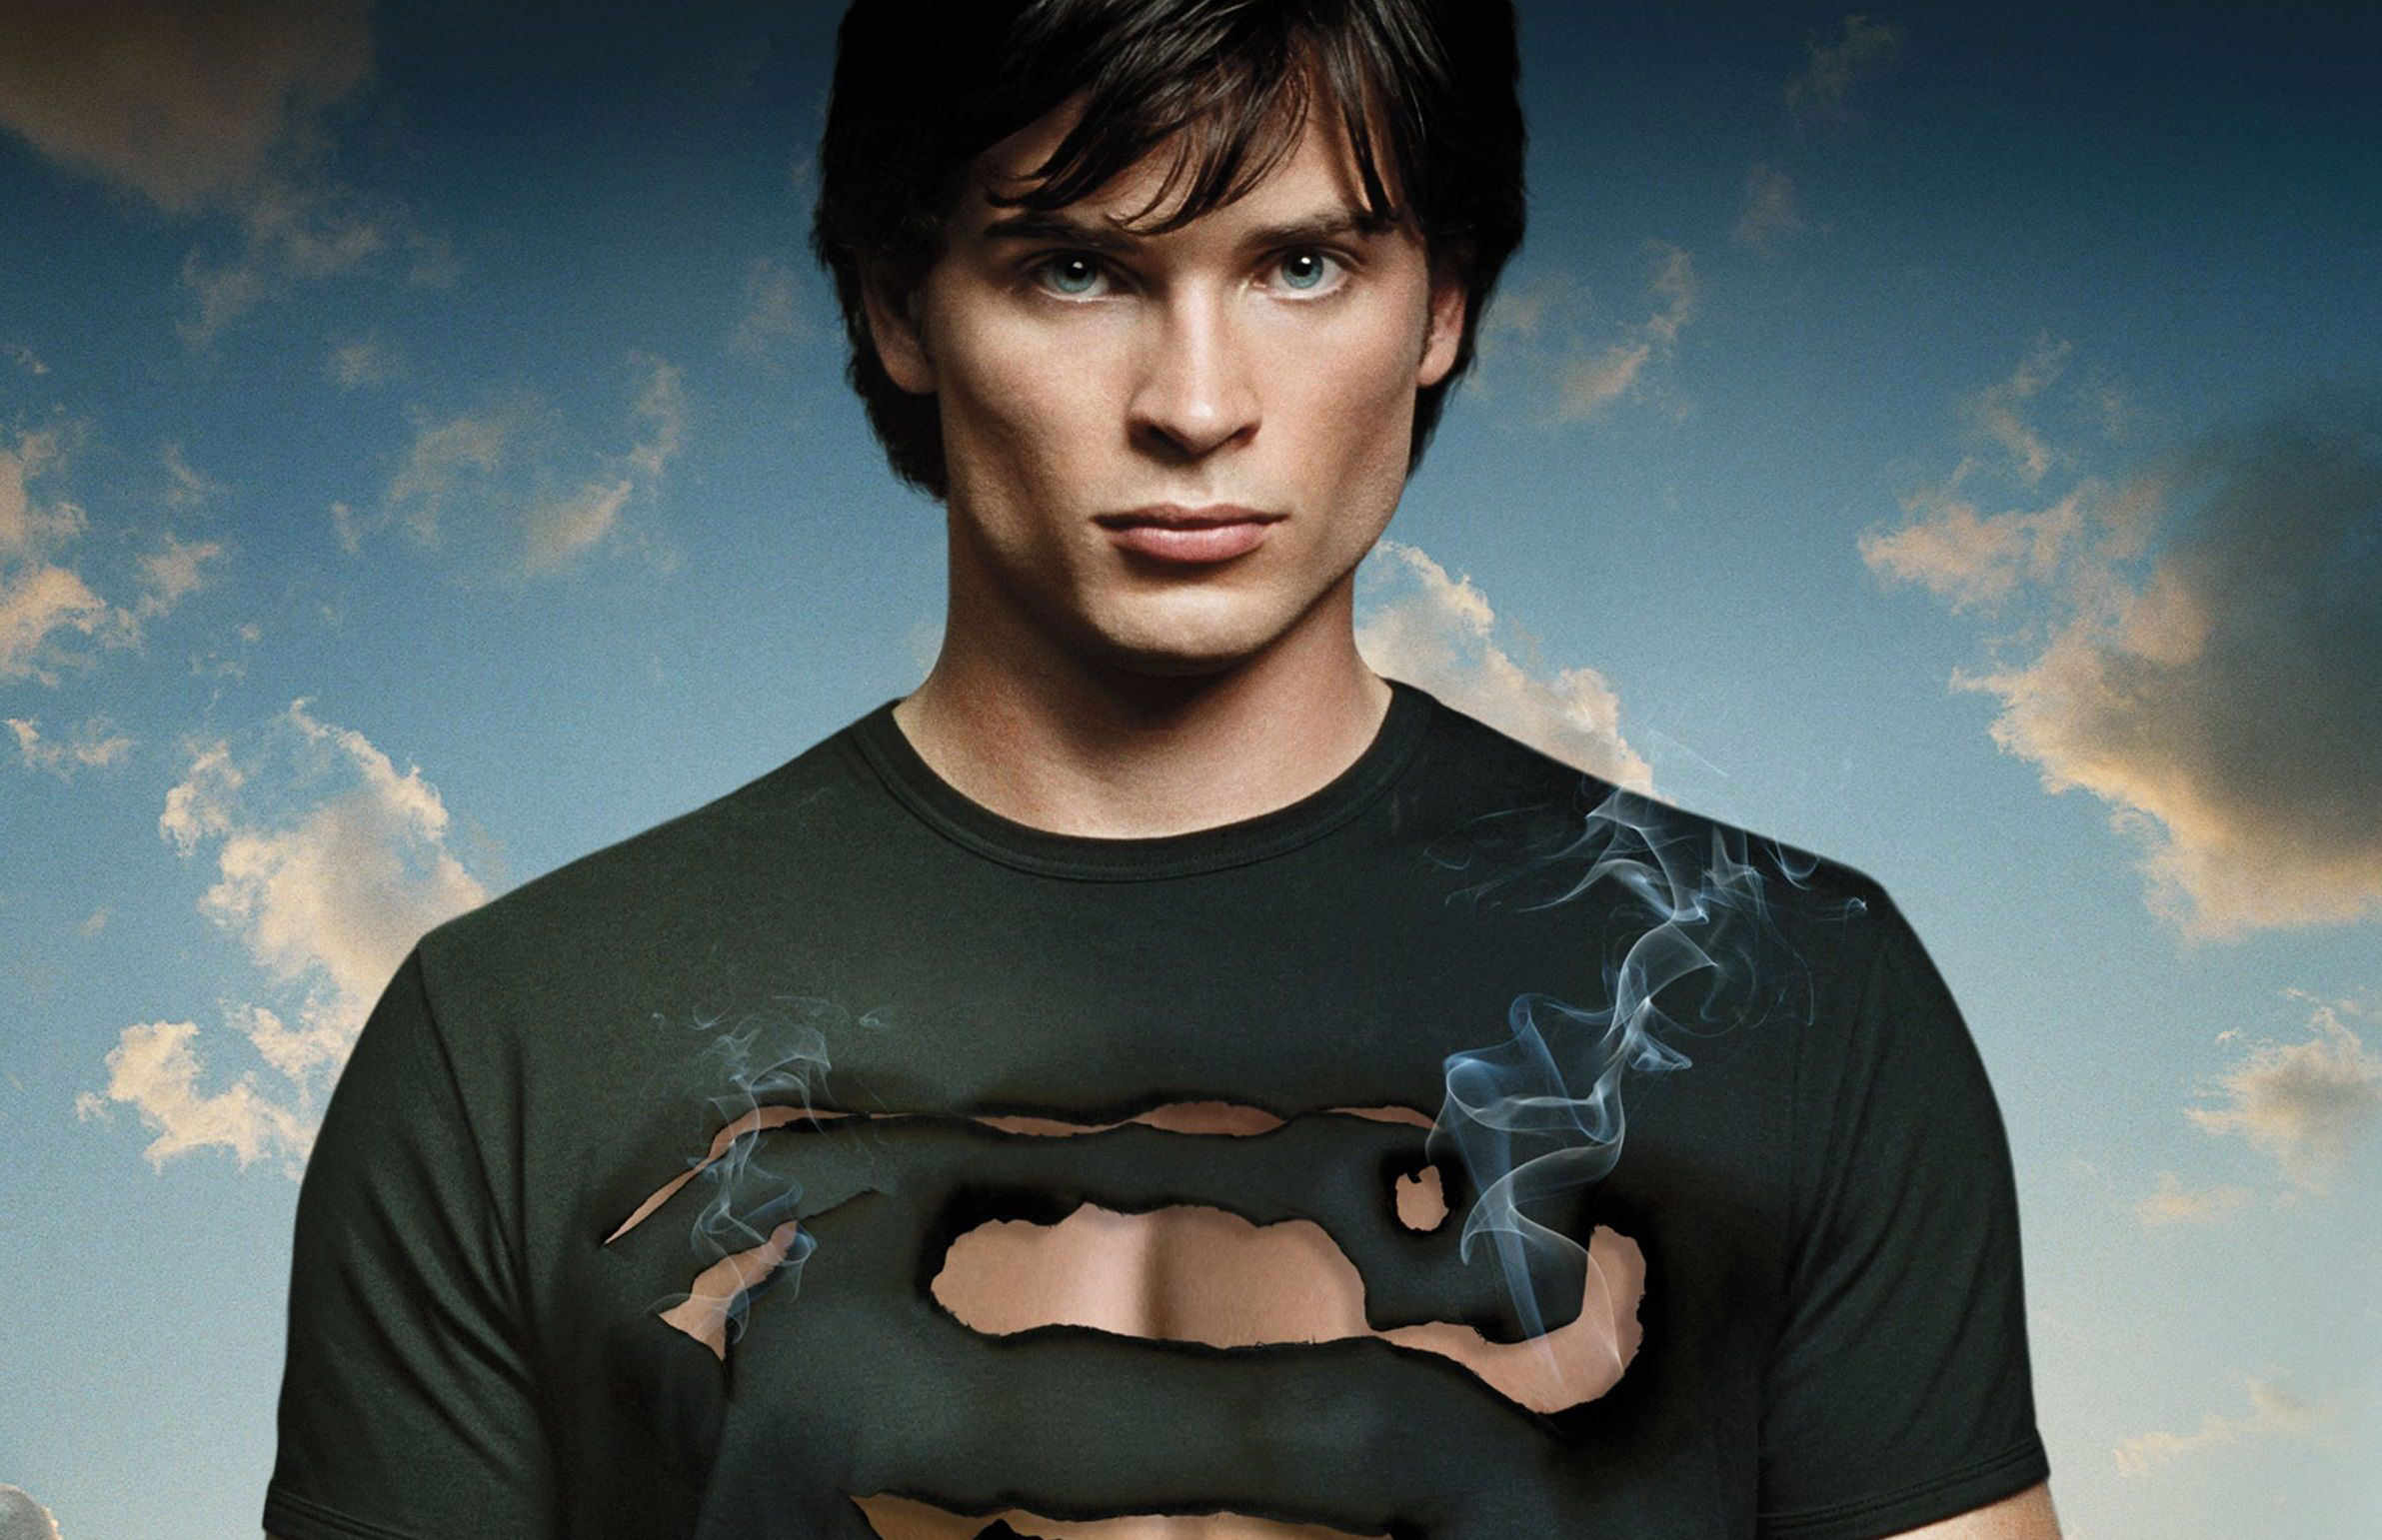 El Protagonista De Smallville Tom Welling Y Su Cambio Físico Que No Pasó Desapercibido En Ecuador 6236